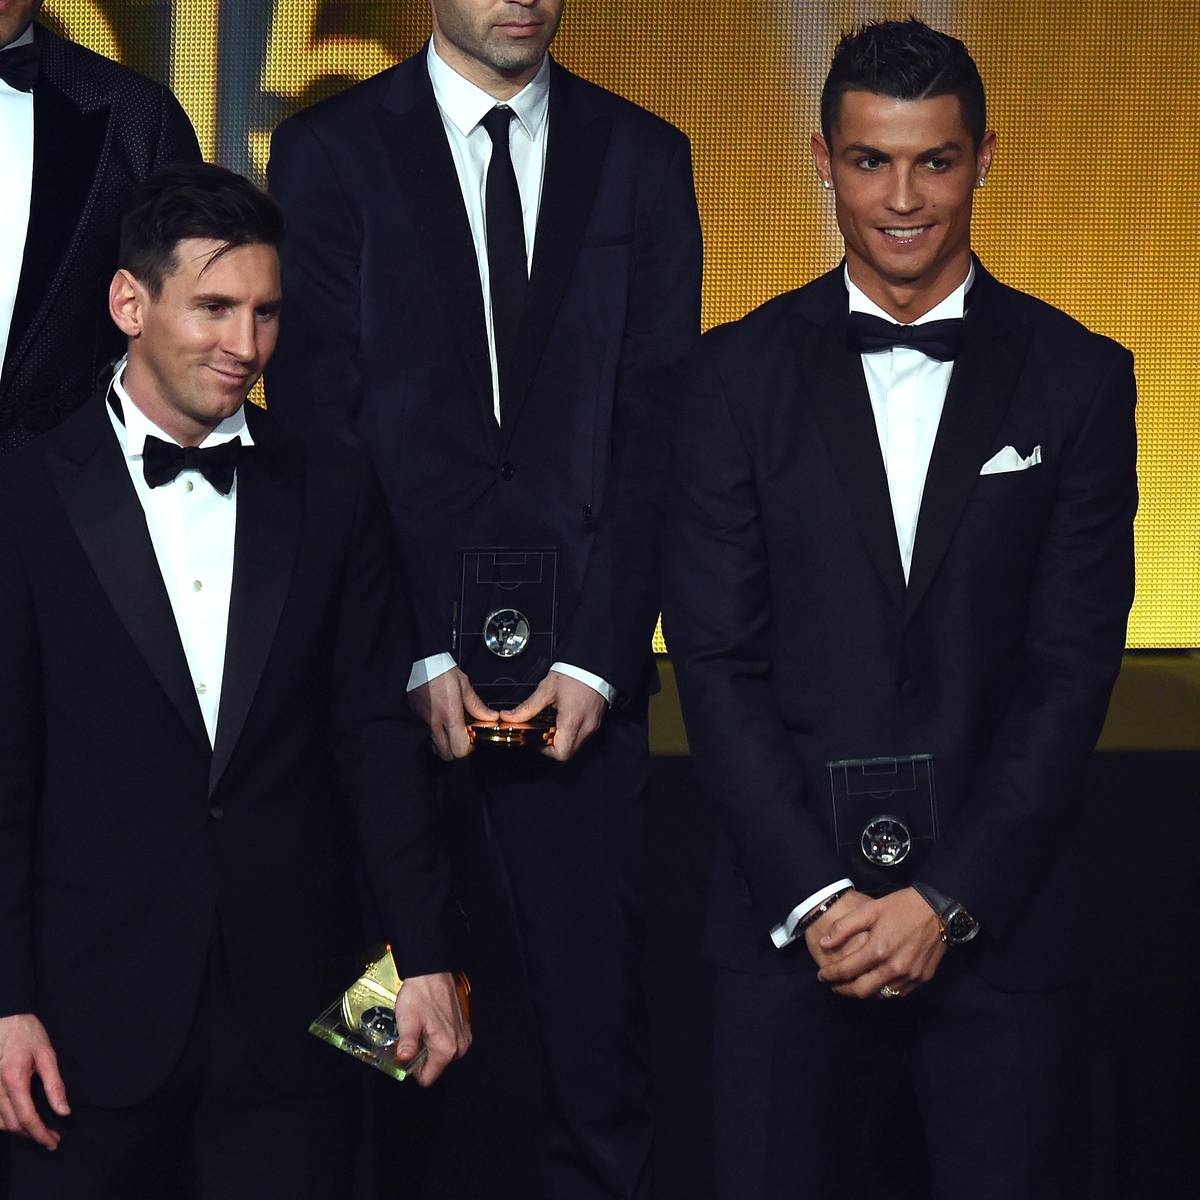 Die Kandidaten für den Ballon d‘Or stehen fest. Auf der Shortlist fehlt ein Superstar, der in der vergangenen Saison enttäuschte. Wer beerbt Lionel Messi als besten Fußballer der Welt?